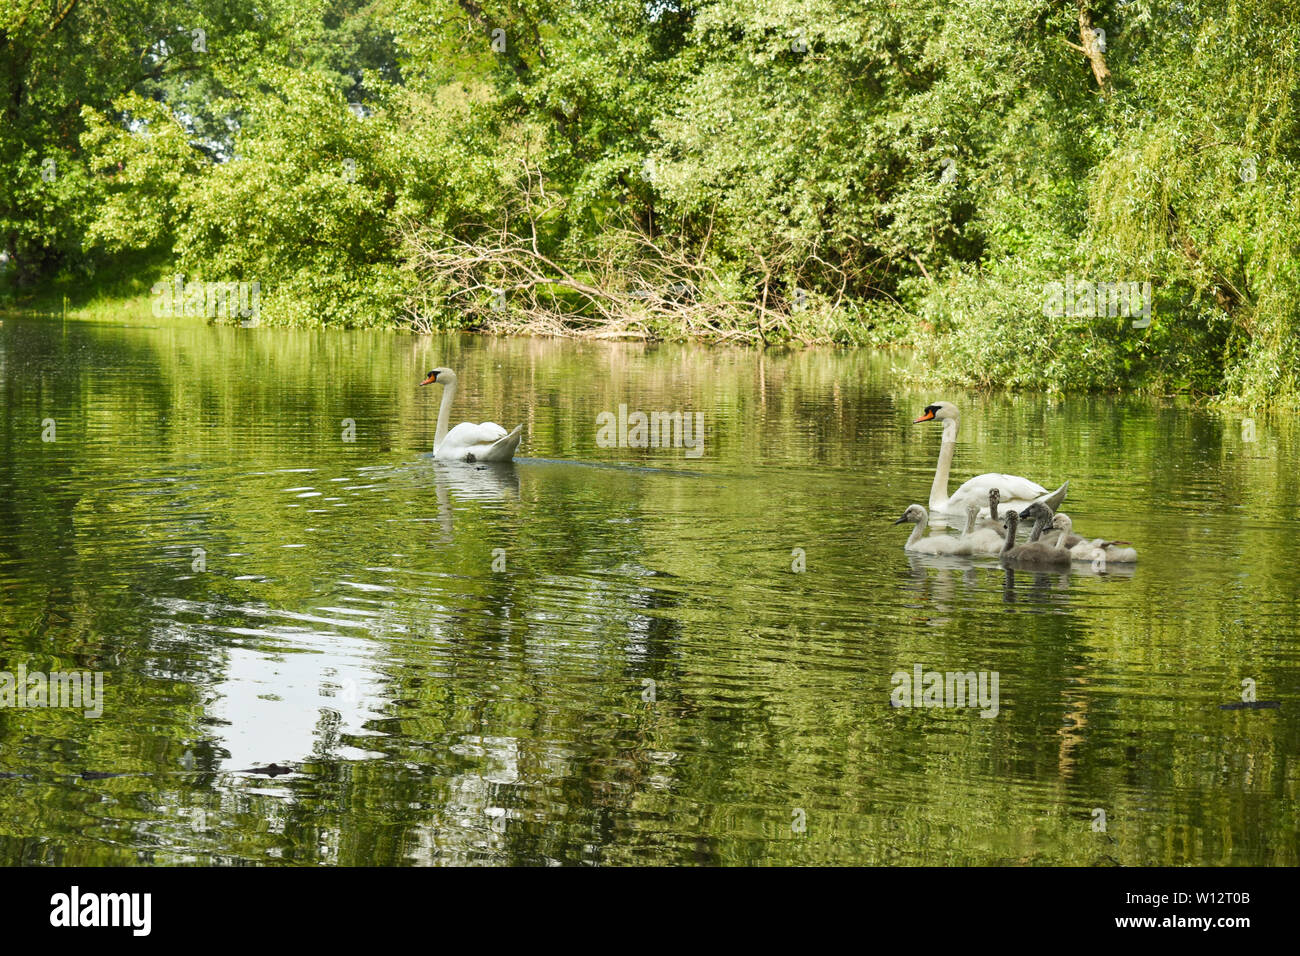 Une famille de cygnes dans le lac entouré de vert des arbres et arbustes. Feuillage vert réflexion sur l'eau. Banque D'Images